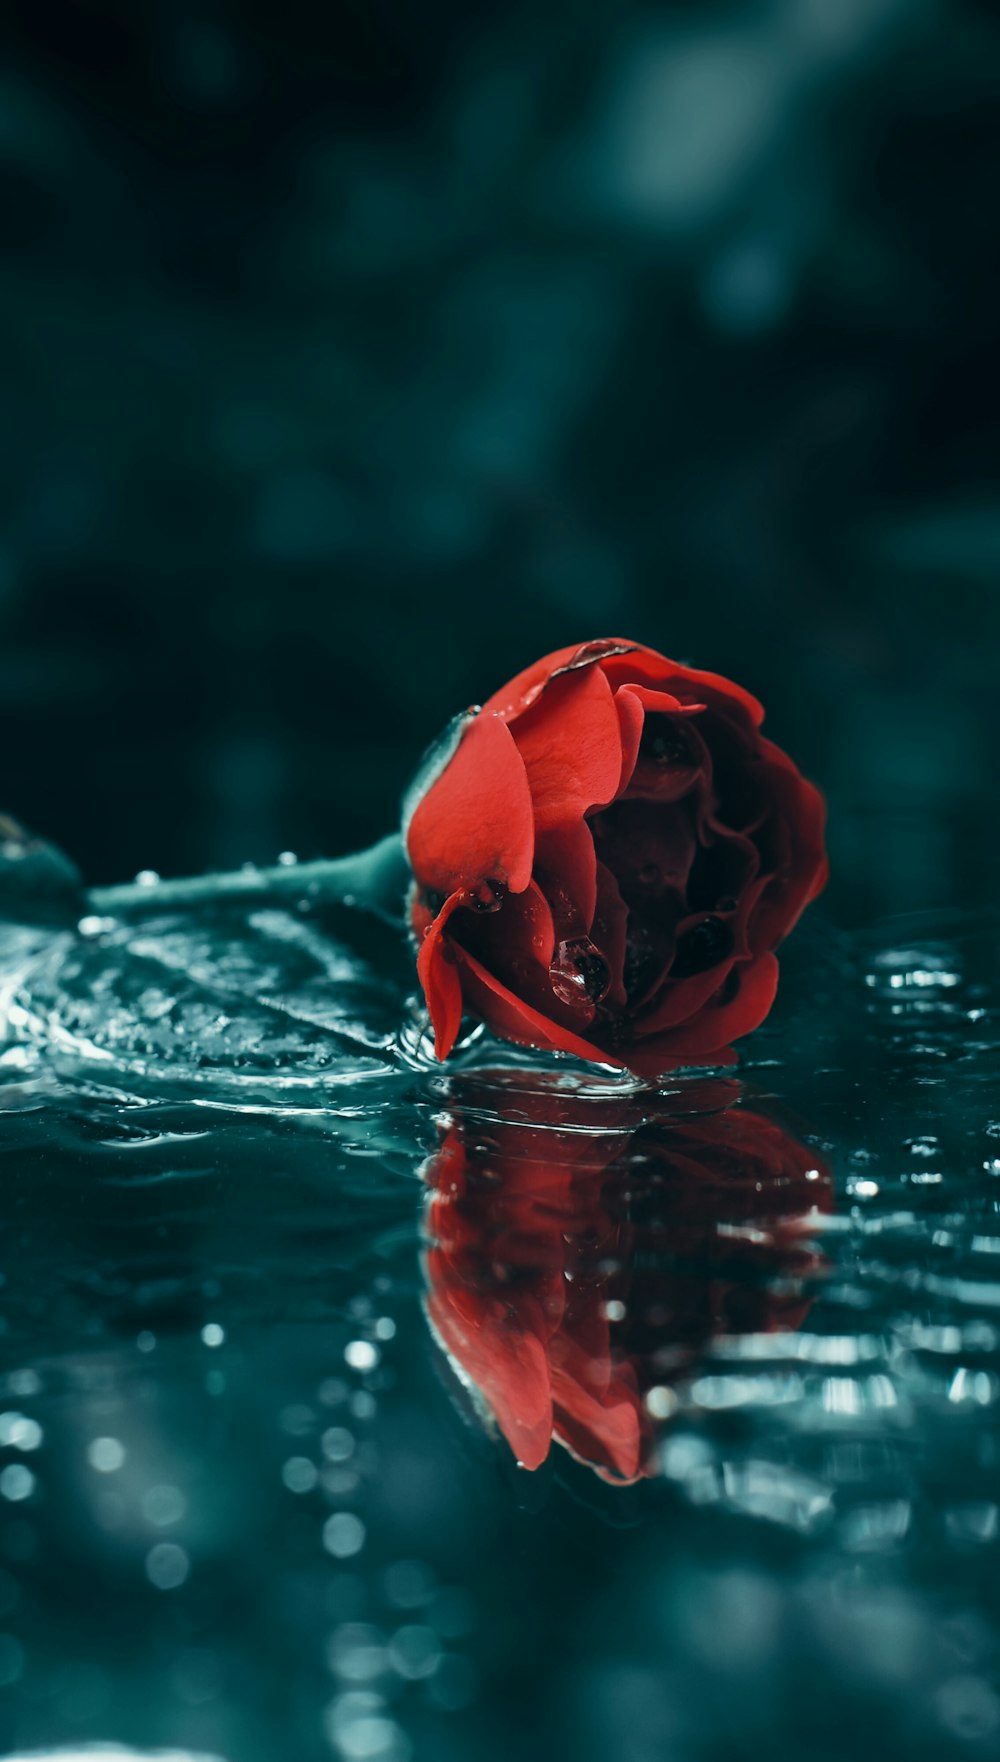 rosa rossa in acqua durante il giorno